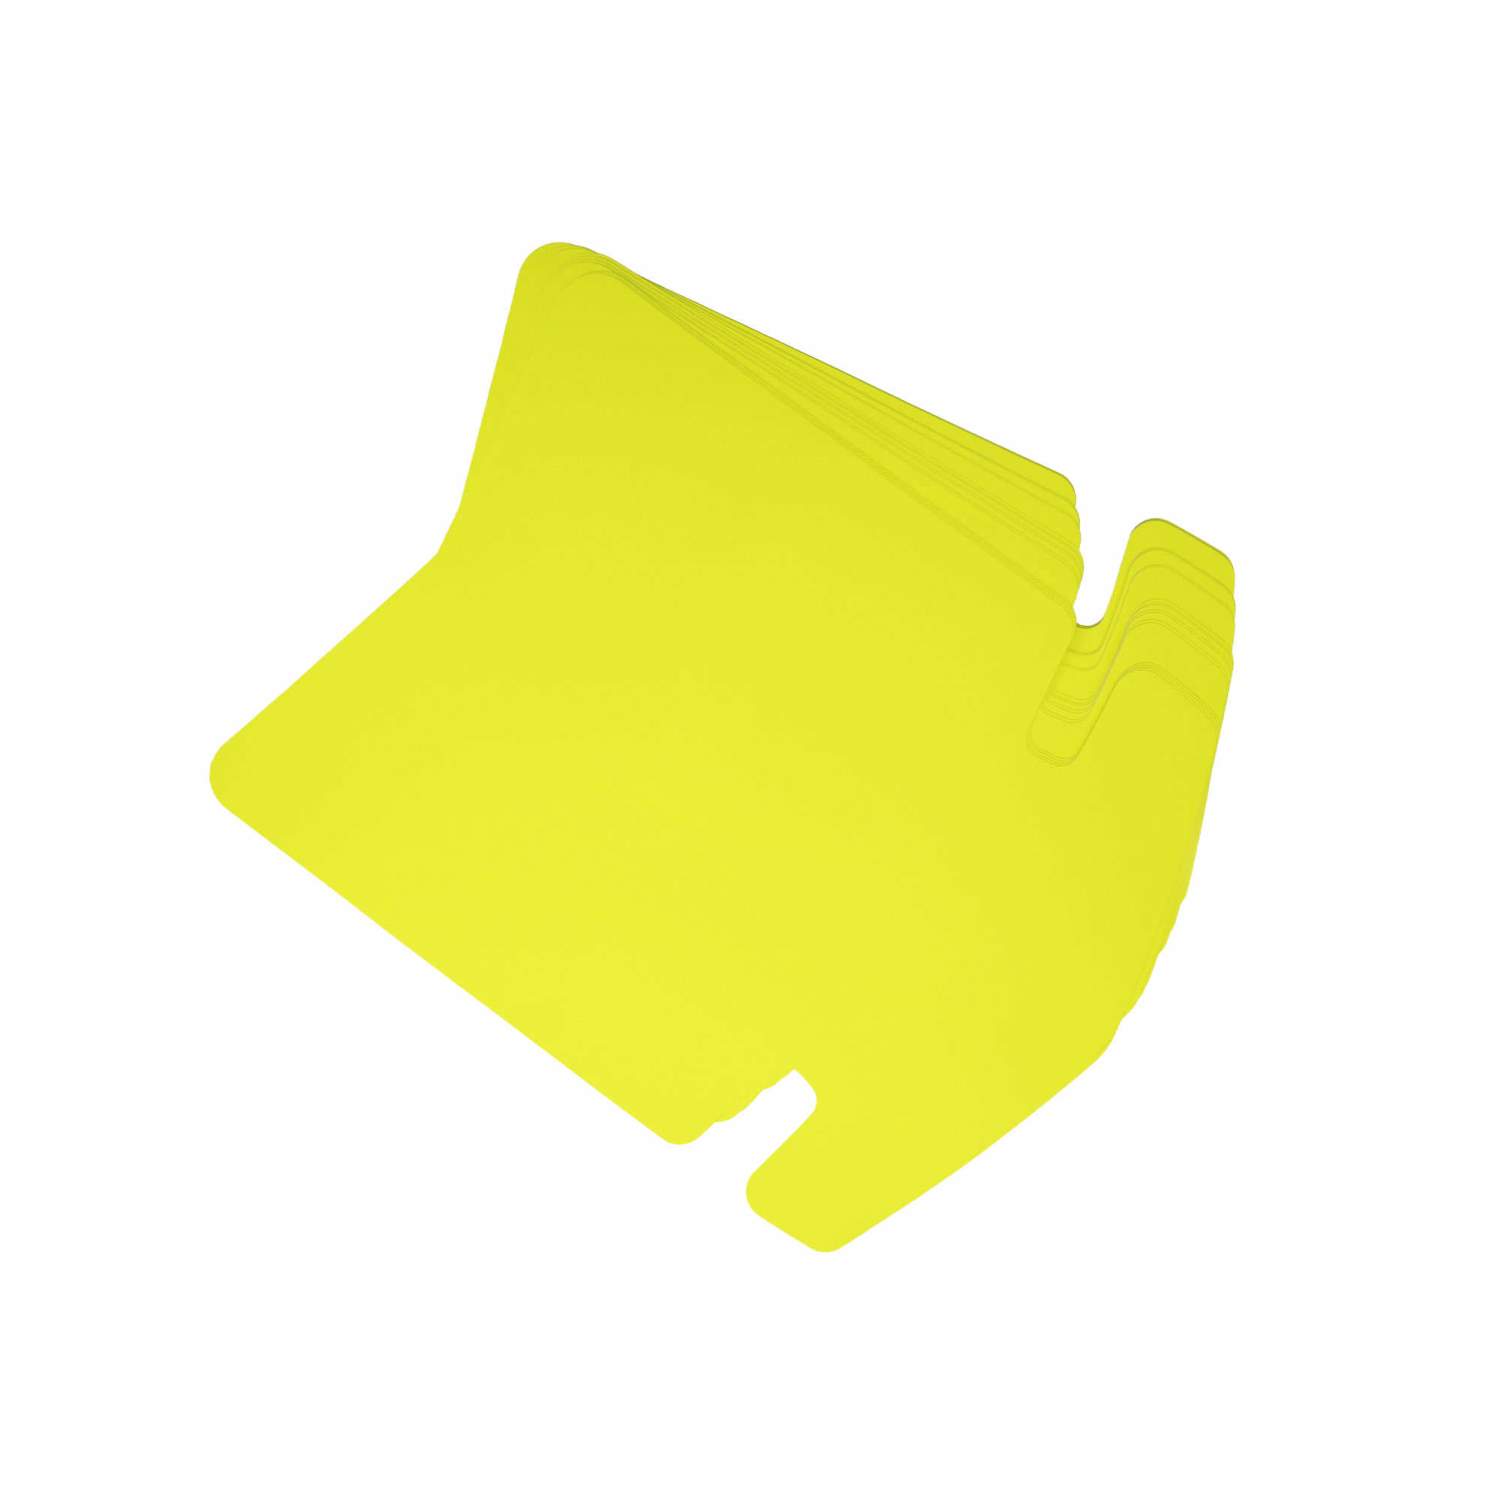 60 Pfeile in 3 Größen Neon gelb Preisschild aus Karton Werbung deko Schaufenster 